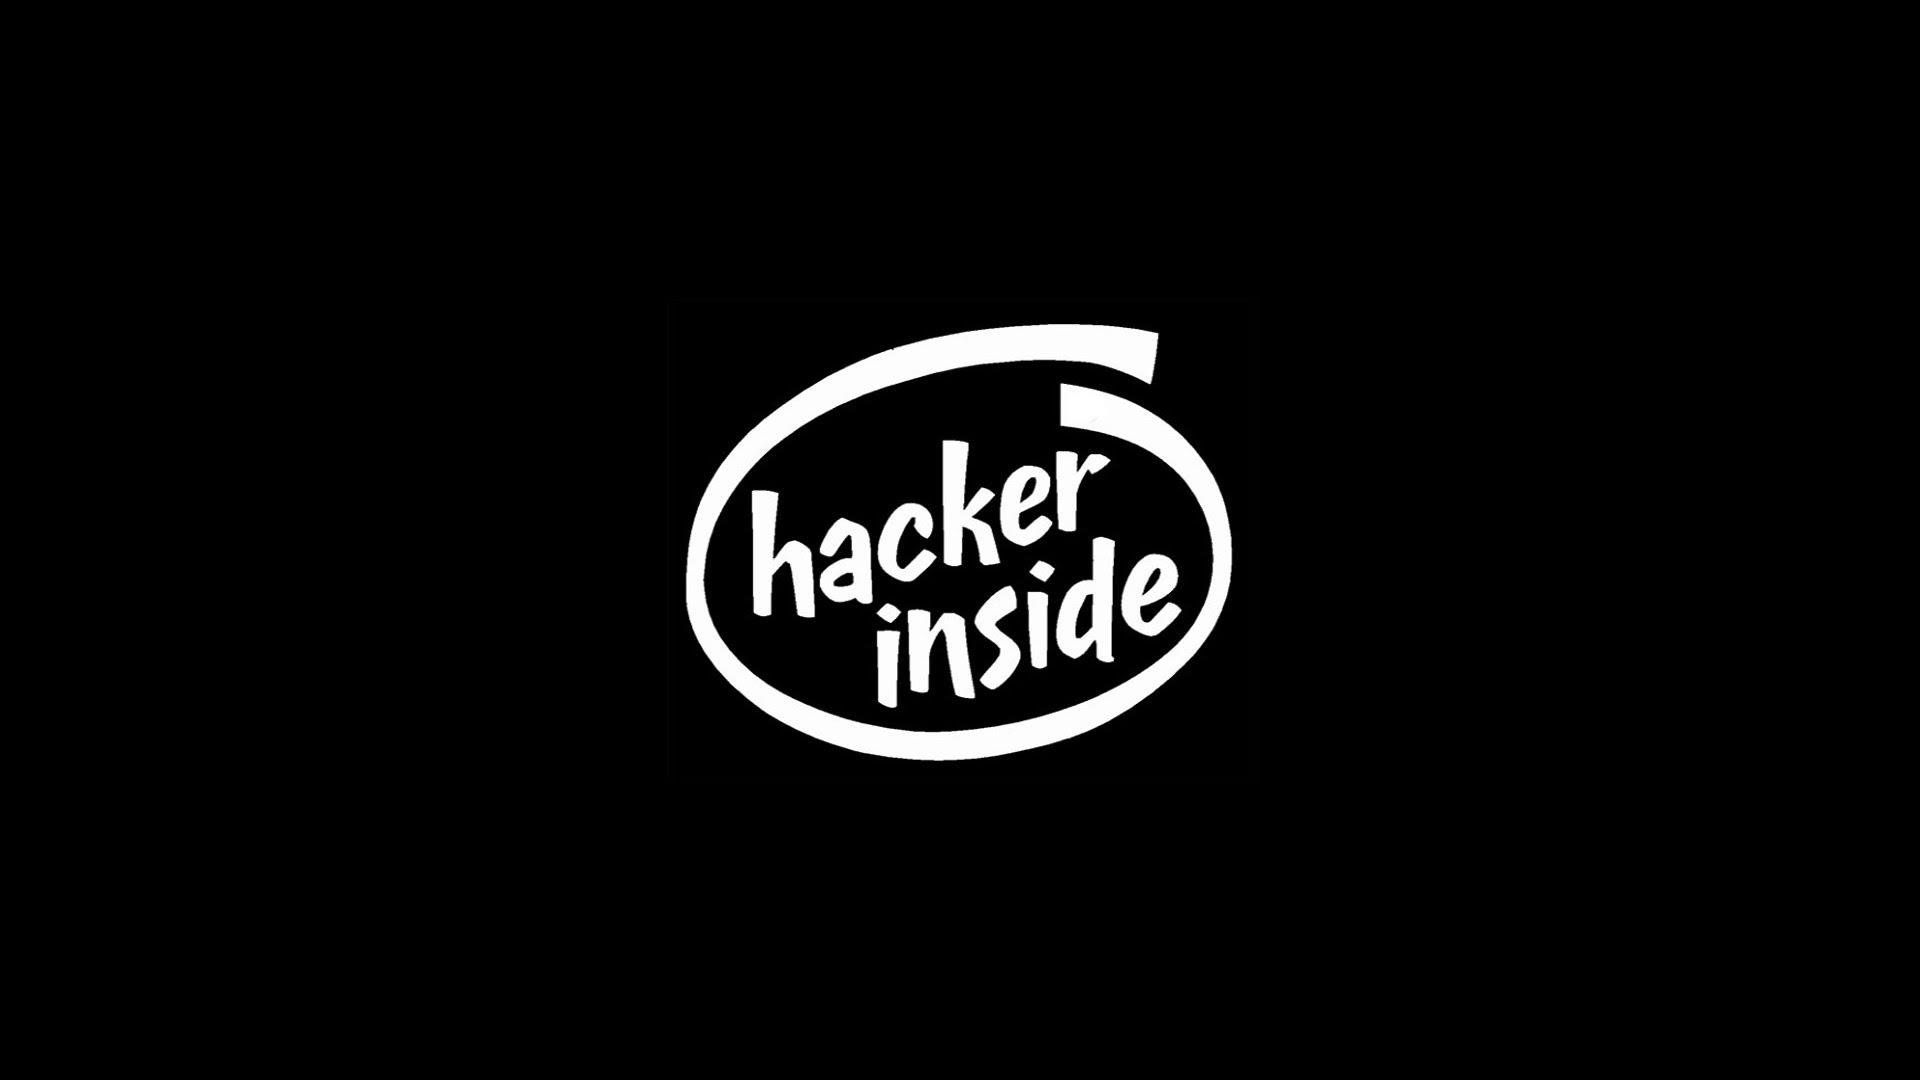 hacker inside wallpaper